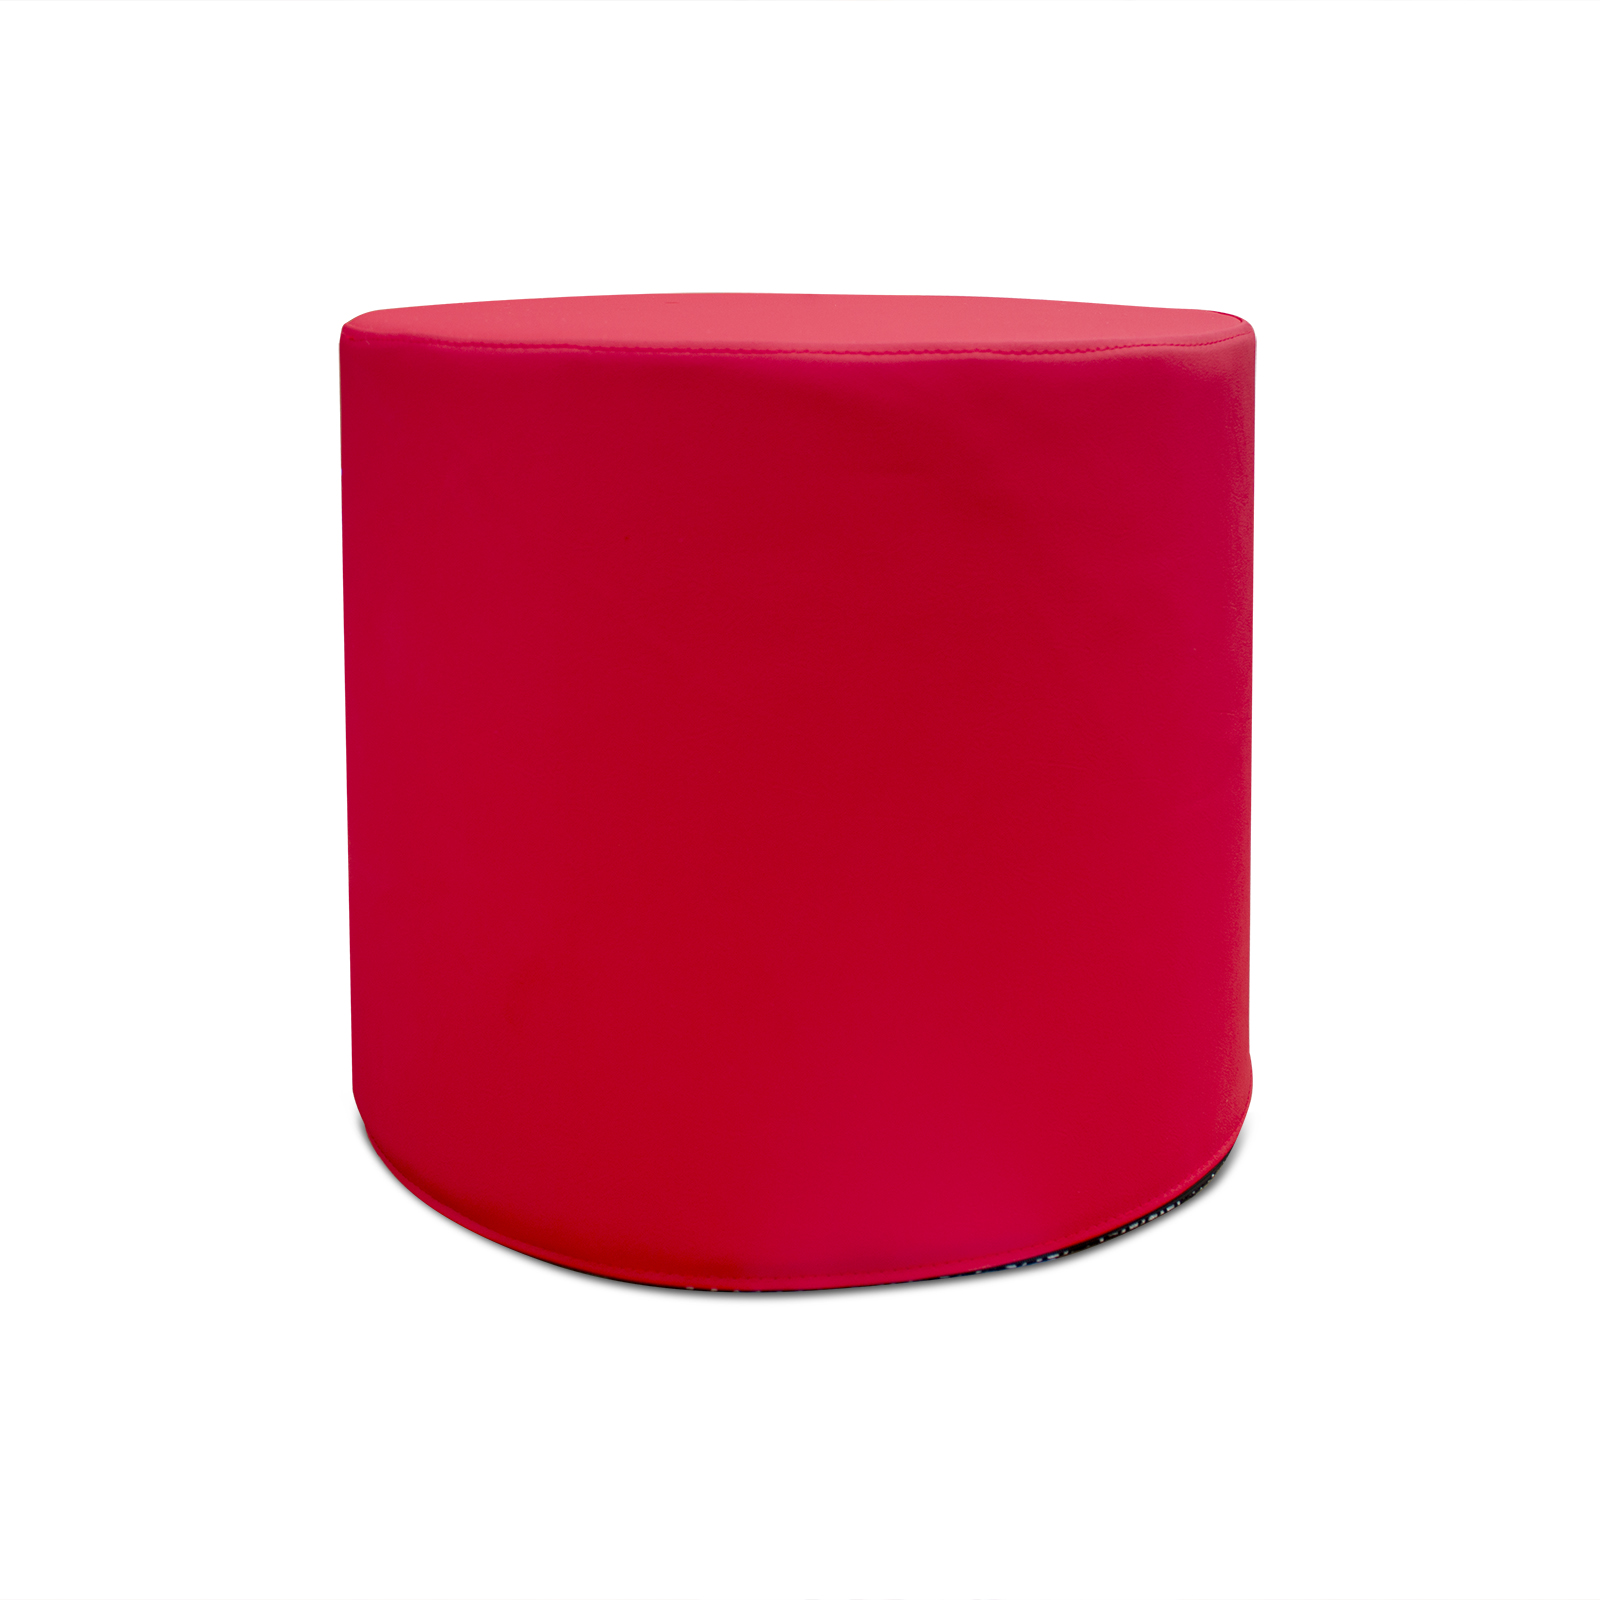 Ein roter zylinderförmiger Hocker aus Kunstleder